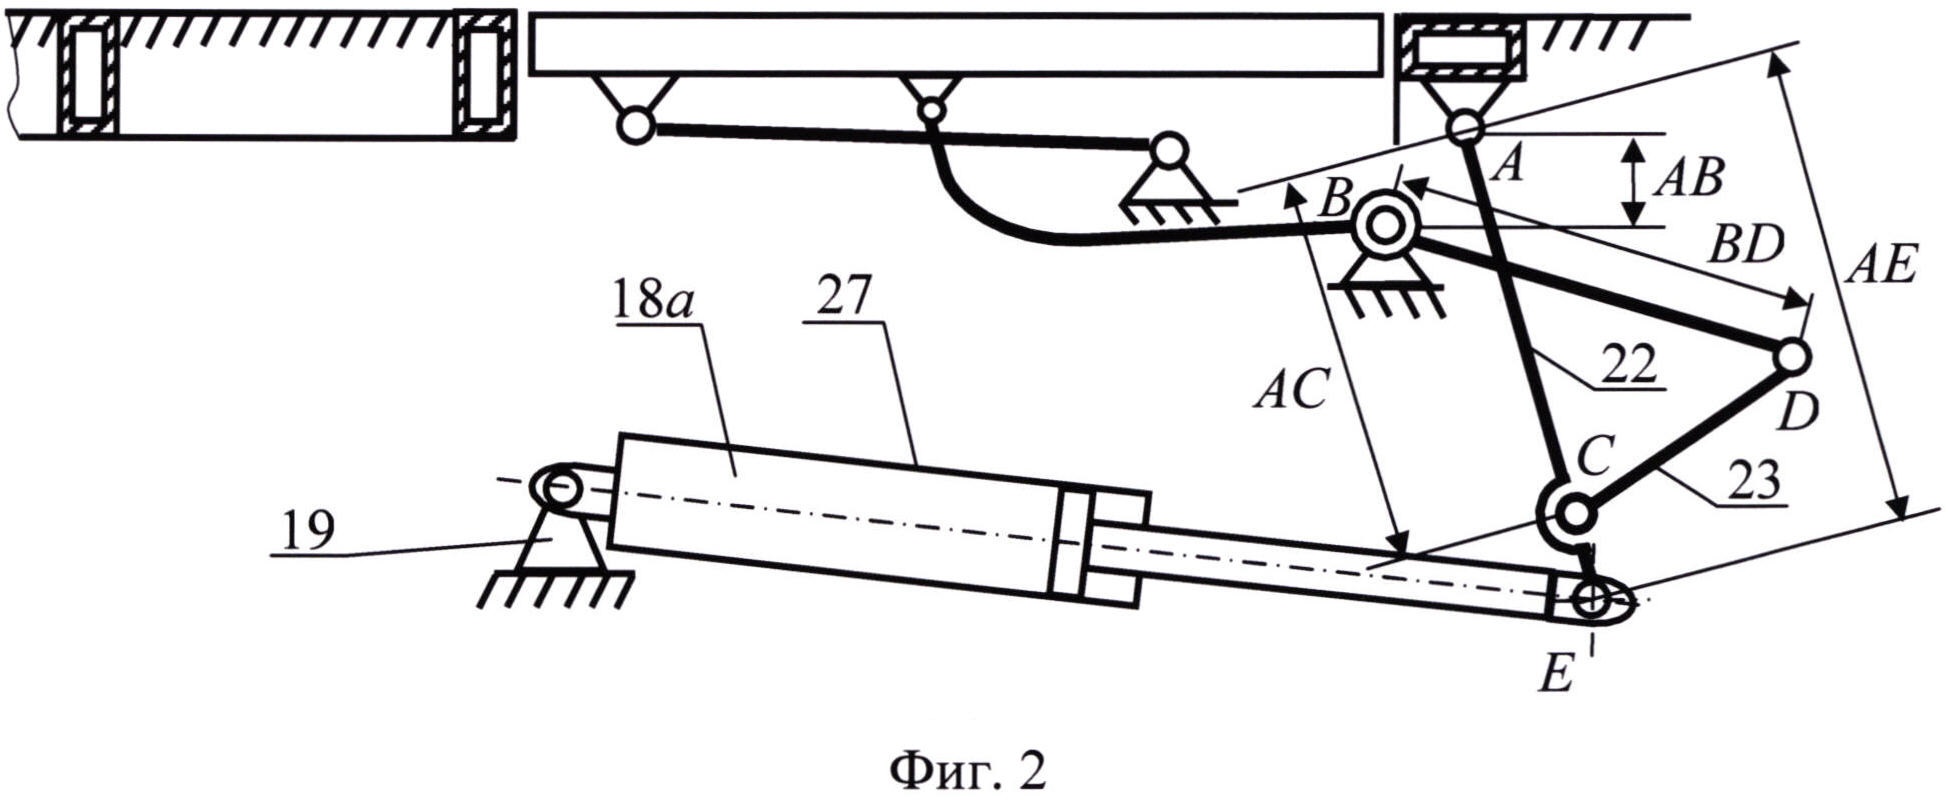 Механизм привода прислонно-сдвижной двери транспортного средства